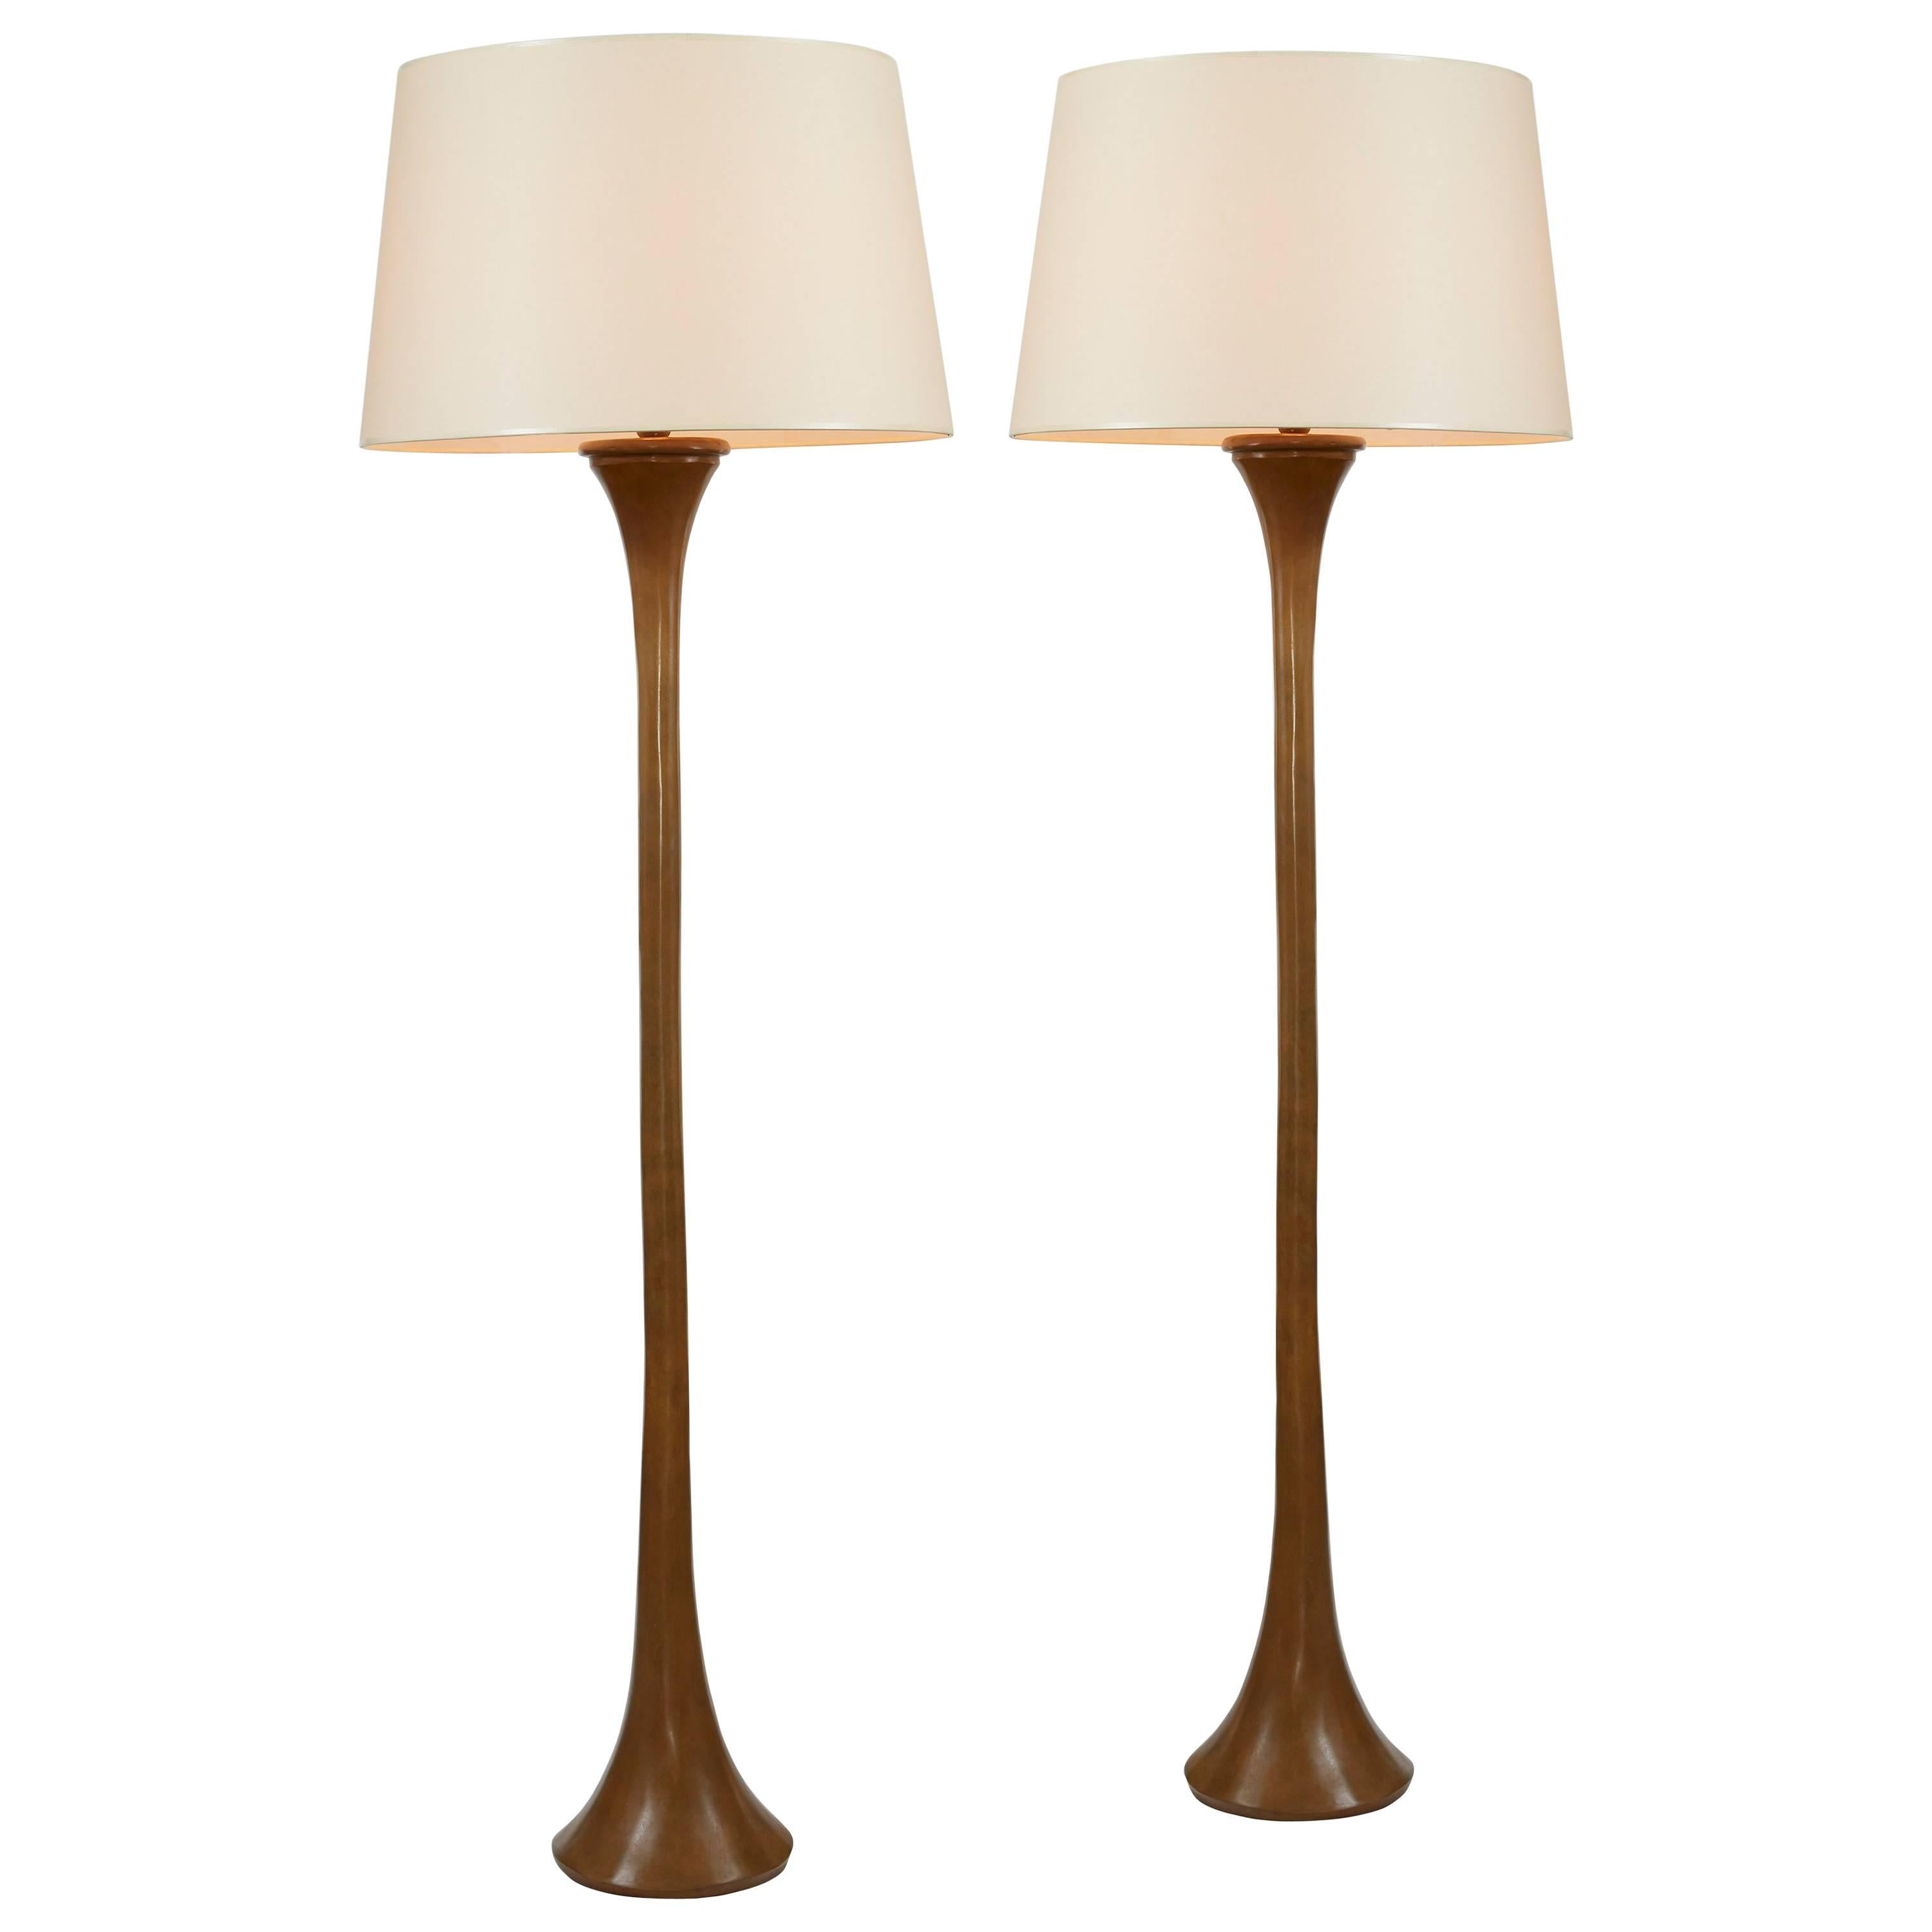 Pair of Bronze Floor Lamps by WH Studio